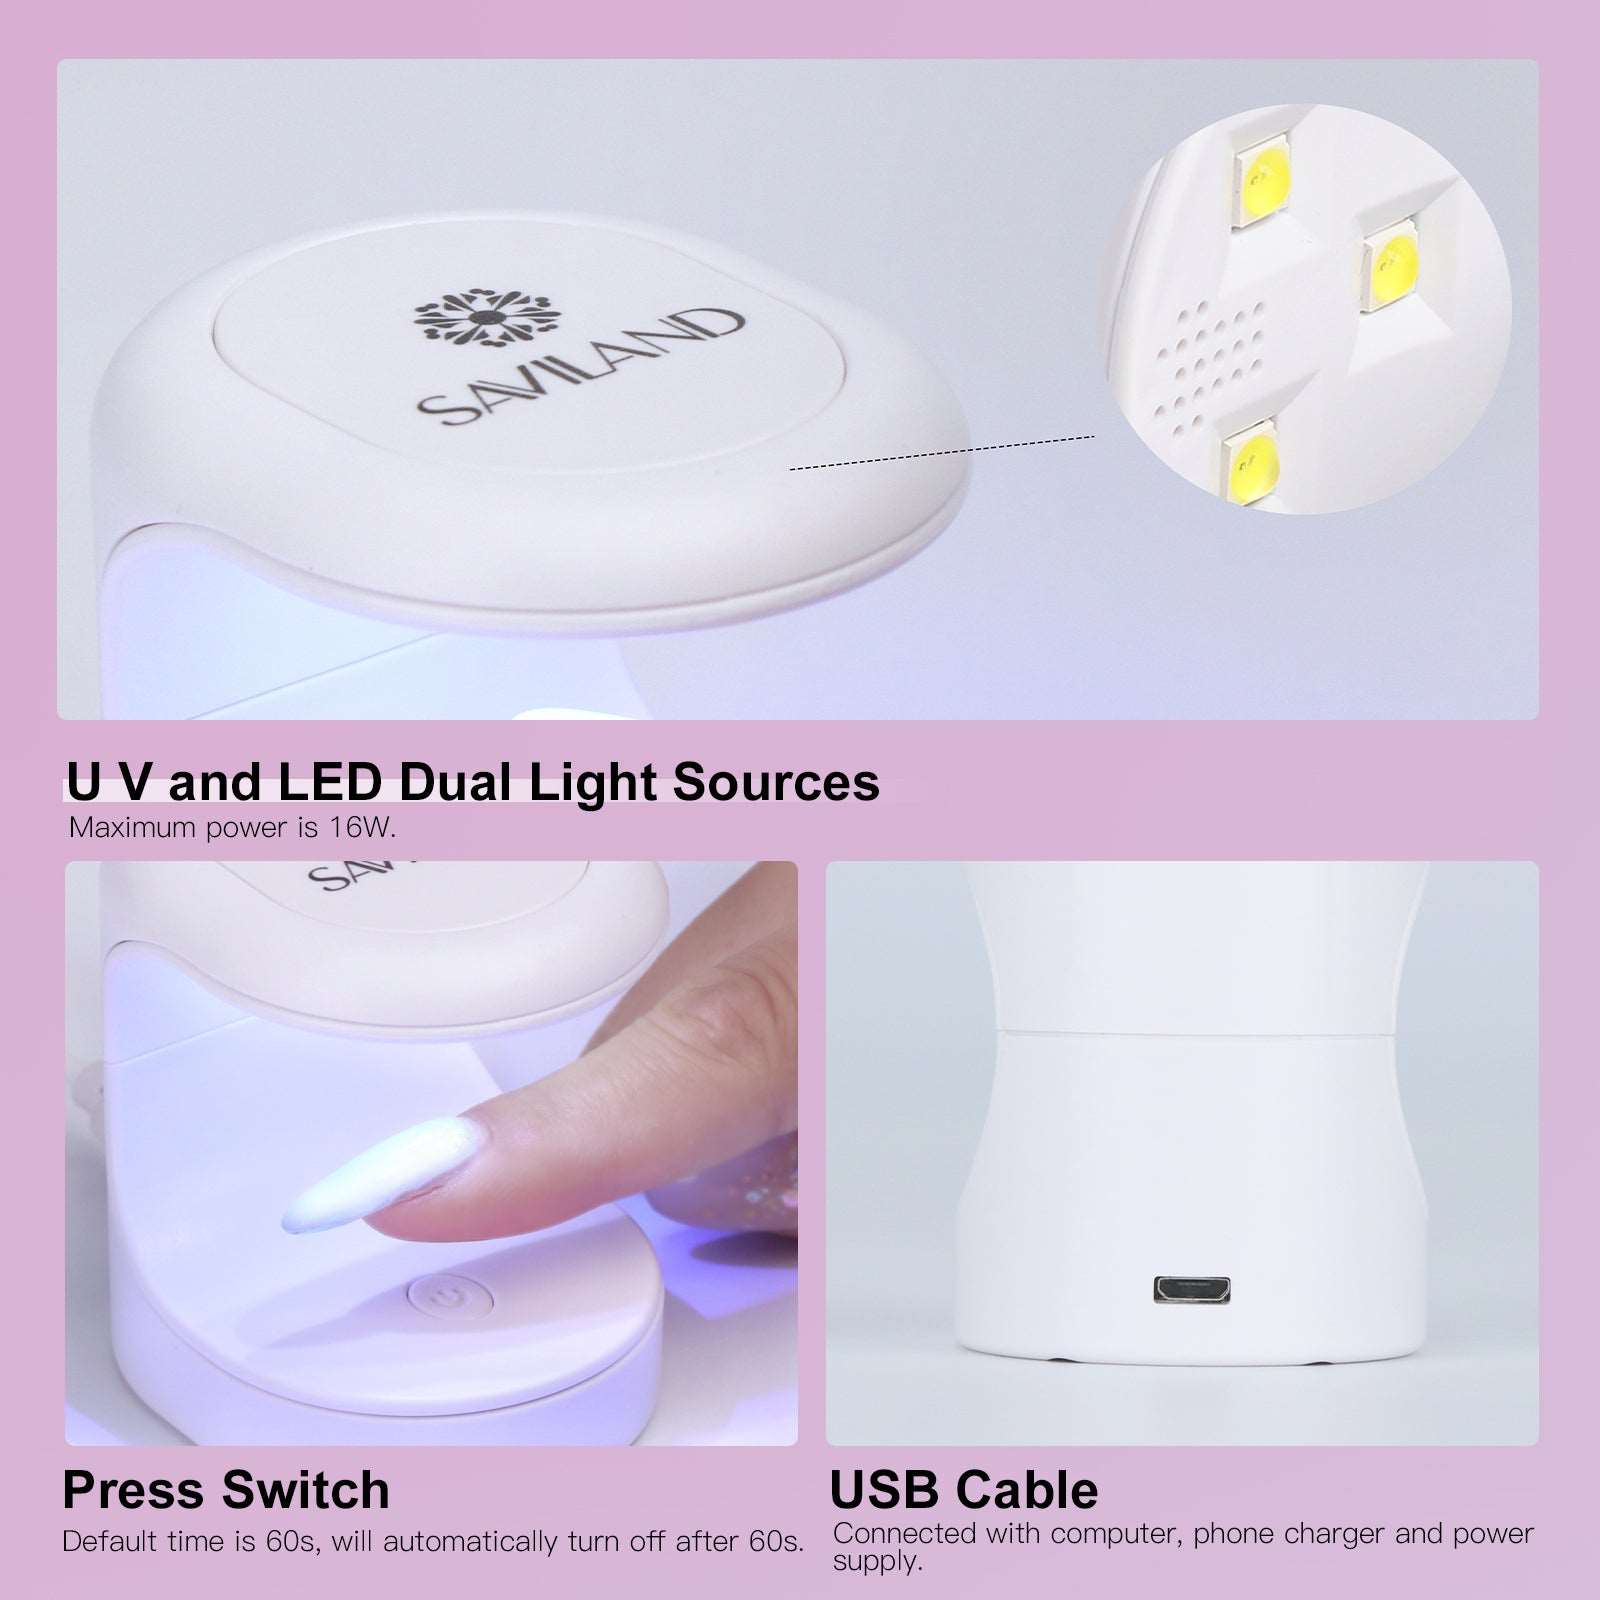 UV LED Nail Lamp, UV Light for Nails Gel Light Nail Dryer for Gel